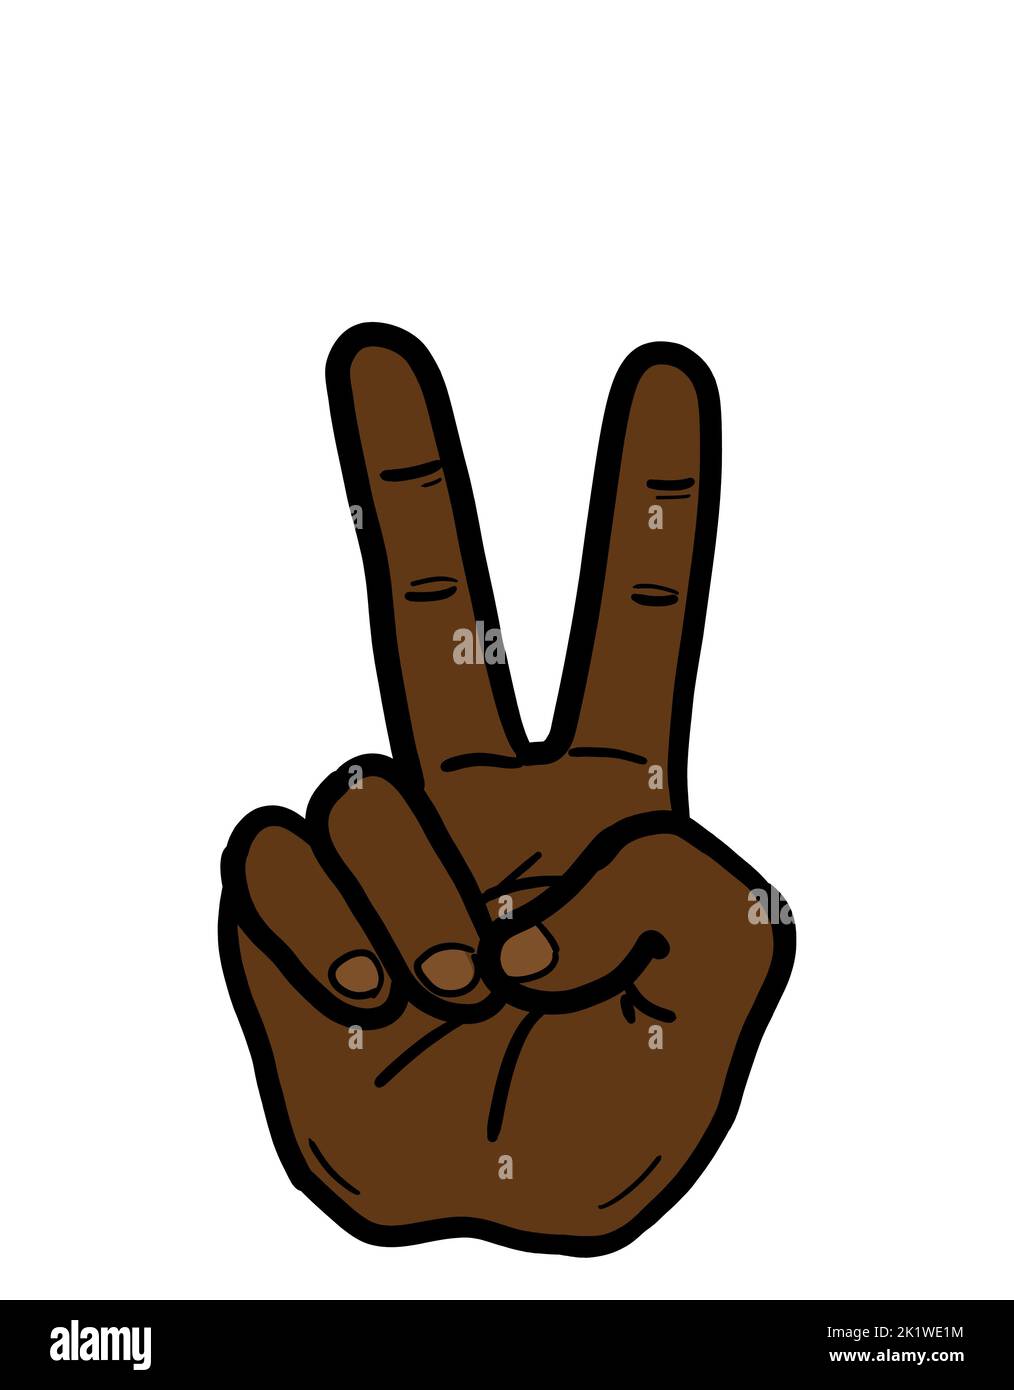 Le vite nere contano. Il segno V è un gesto di mano dell'etnia afro-americana come simbolo di vittoria, pace, successo e antirazzismo. Un'isola di disegno Foto Stock